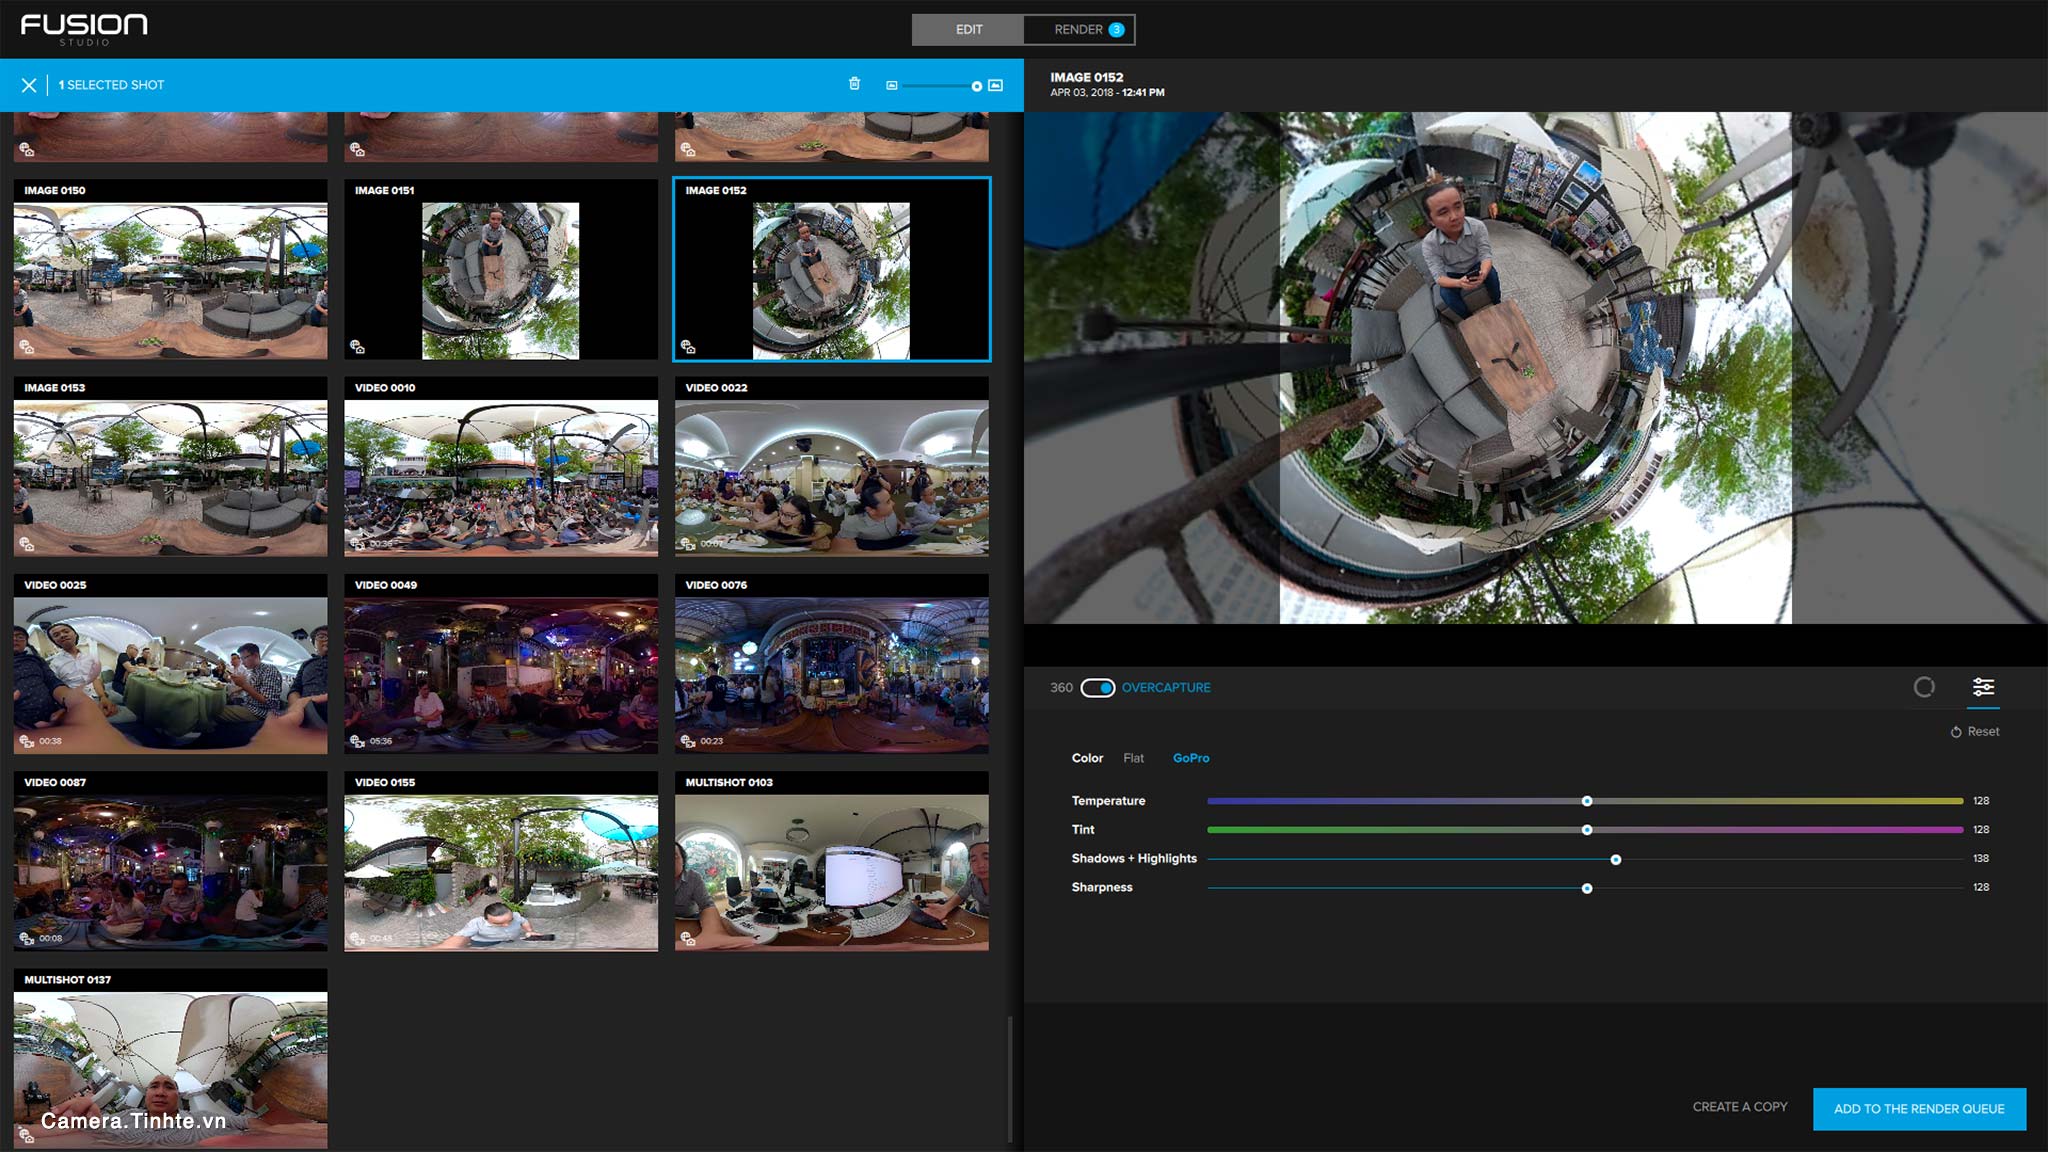 Review Gopro Fusion, chiếc camera 360° có chất lượng ảnh và video rất tốt,  nhưng giá cao & app chậm